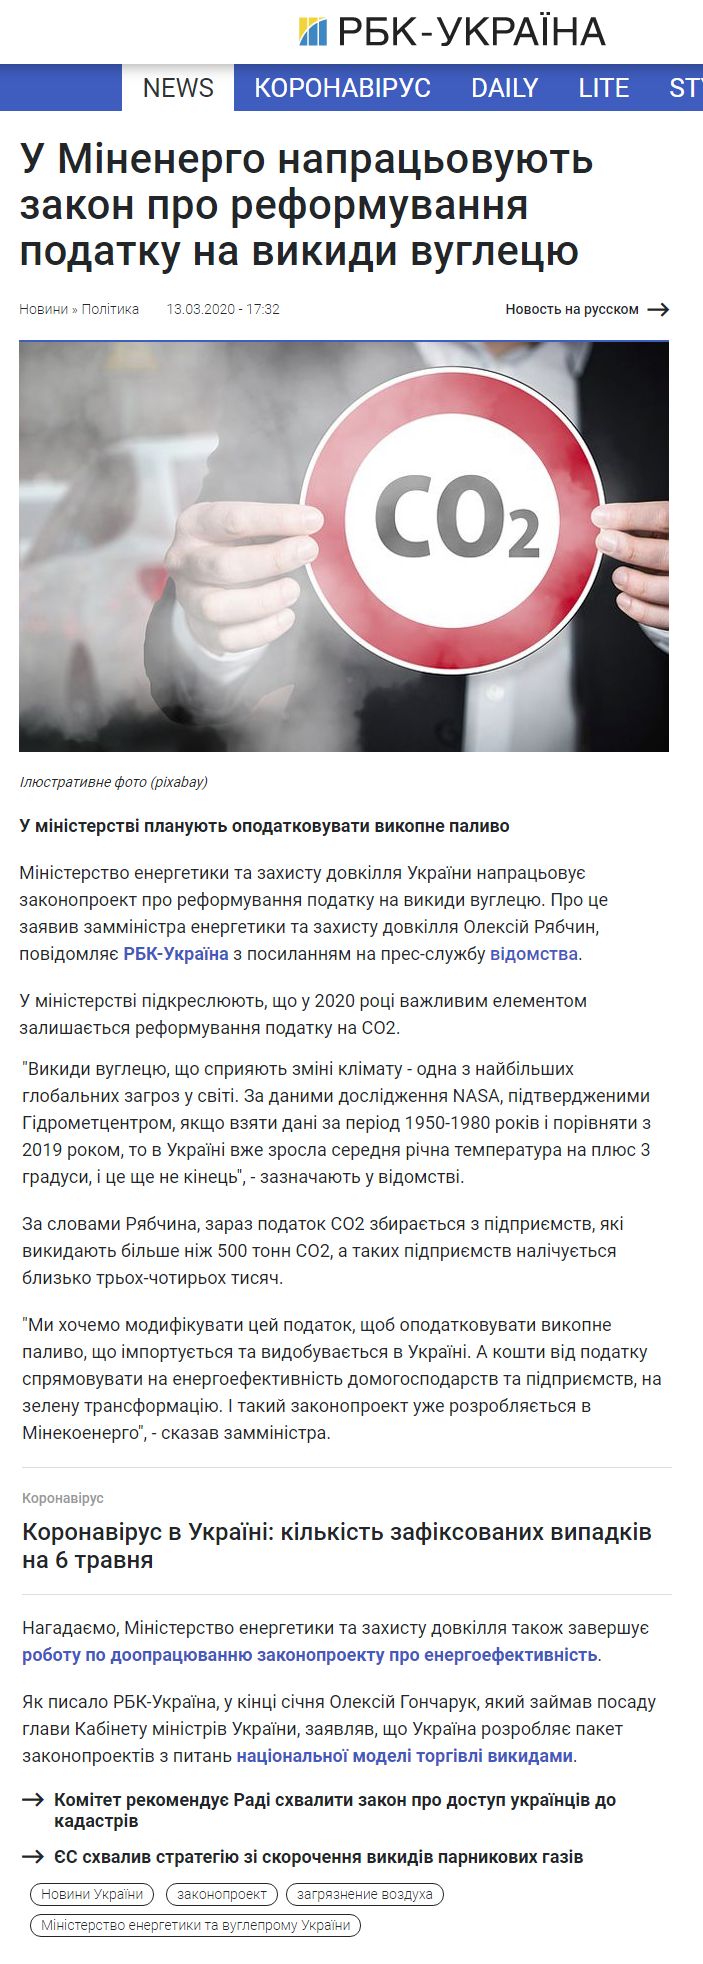 https://www.rbc.ua/ukr/news/minenergo-narabatyvayut-zakon-reformirovanii-1584111365.html